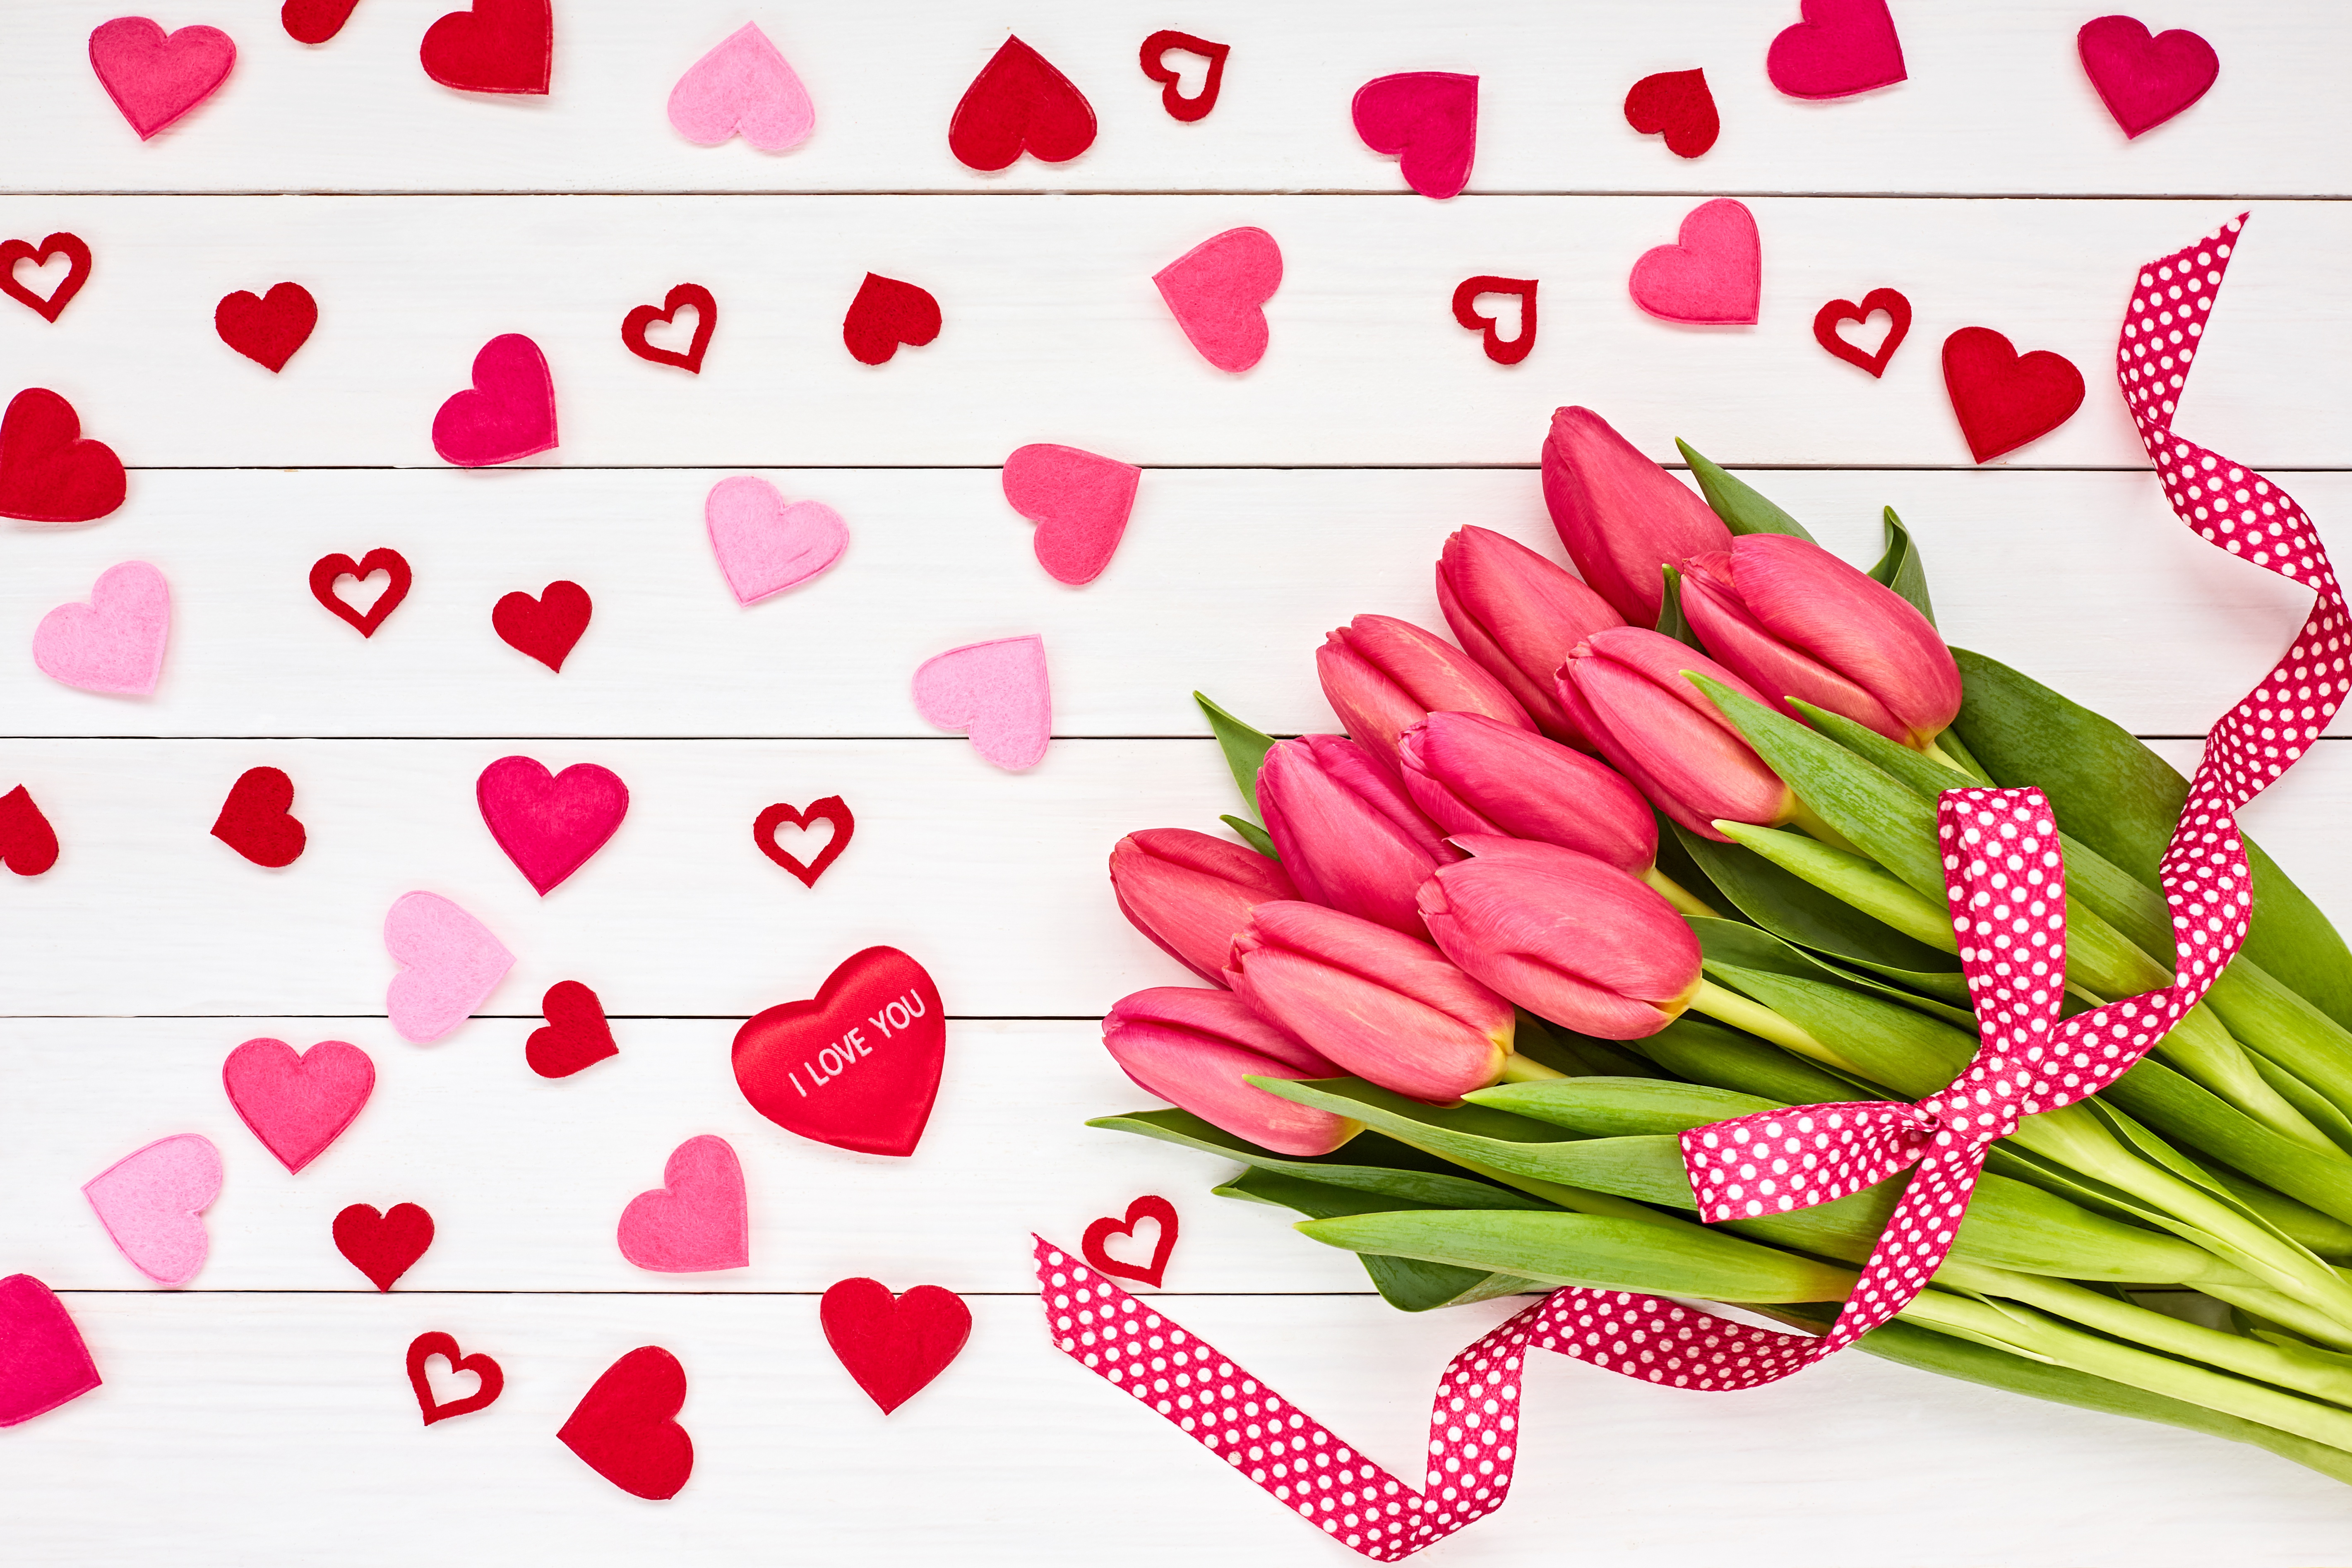 Скачать обои бесплатно Любовь, Цветок, Сердце, Тюльпан, День Святого Валентина, Праздничные, Розовый Цветок картинка на рабочий стол ПК